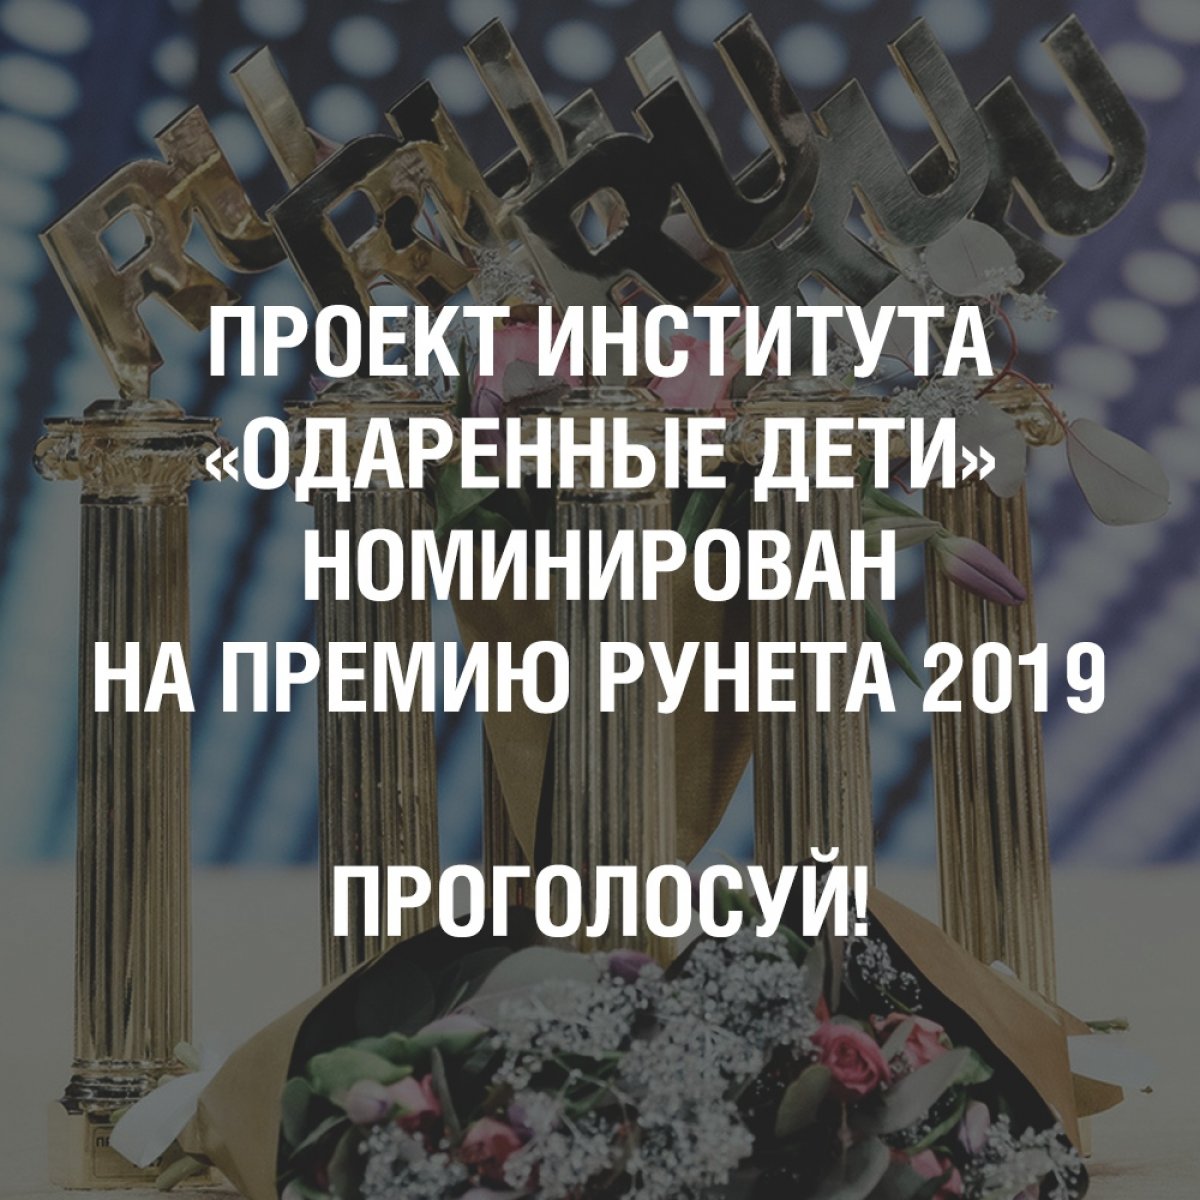 Общеинститутский проект «Одаренные дети» во второй раз номинирован на Премию Рунета в категории «Детский Рунет»